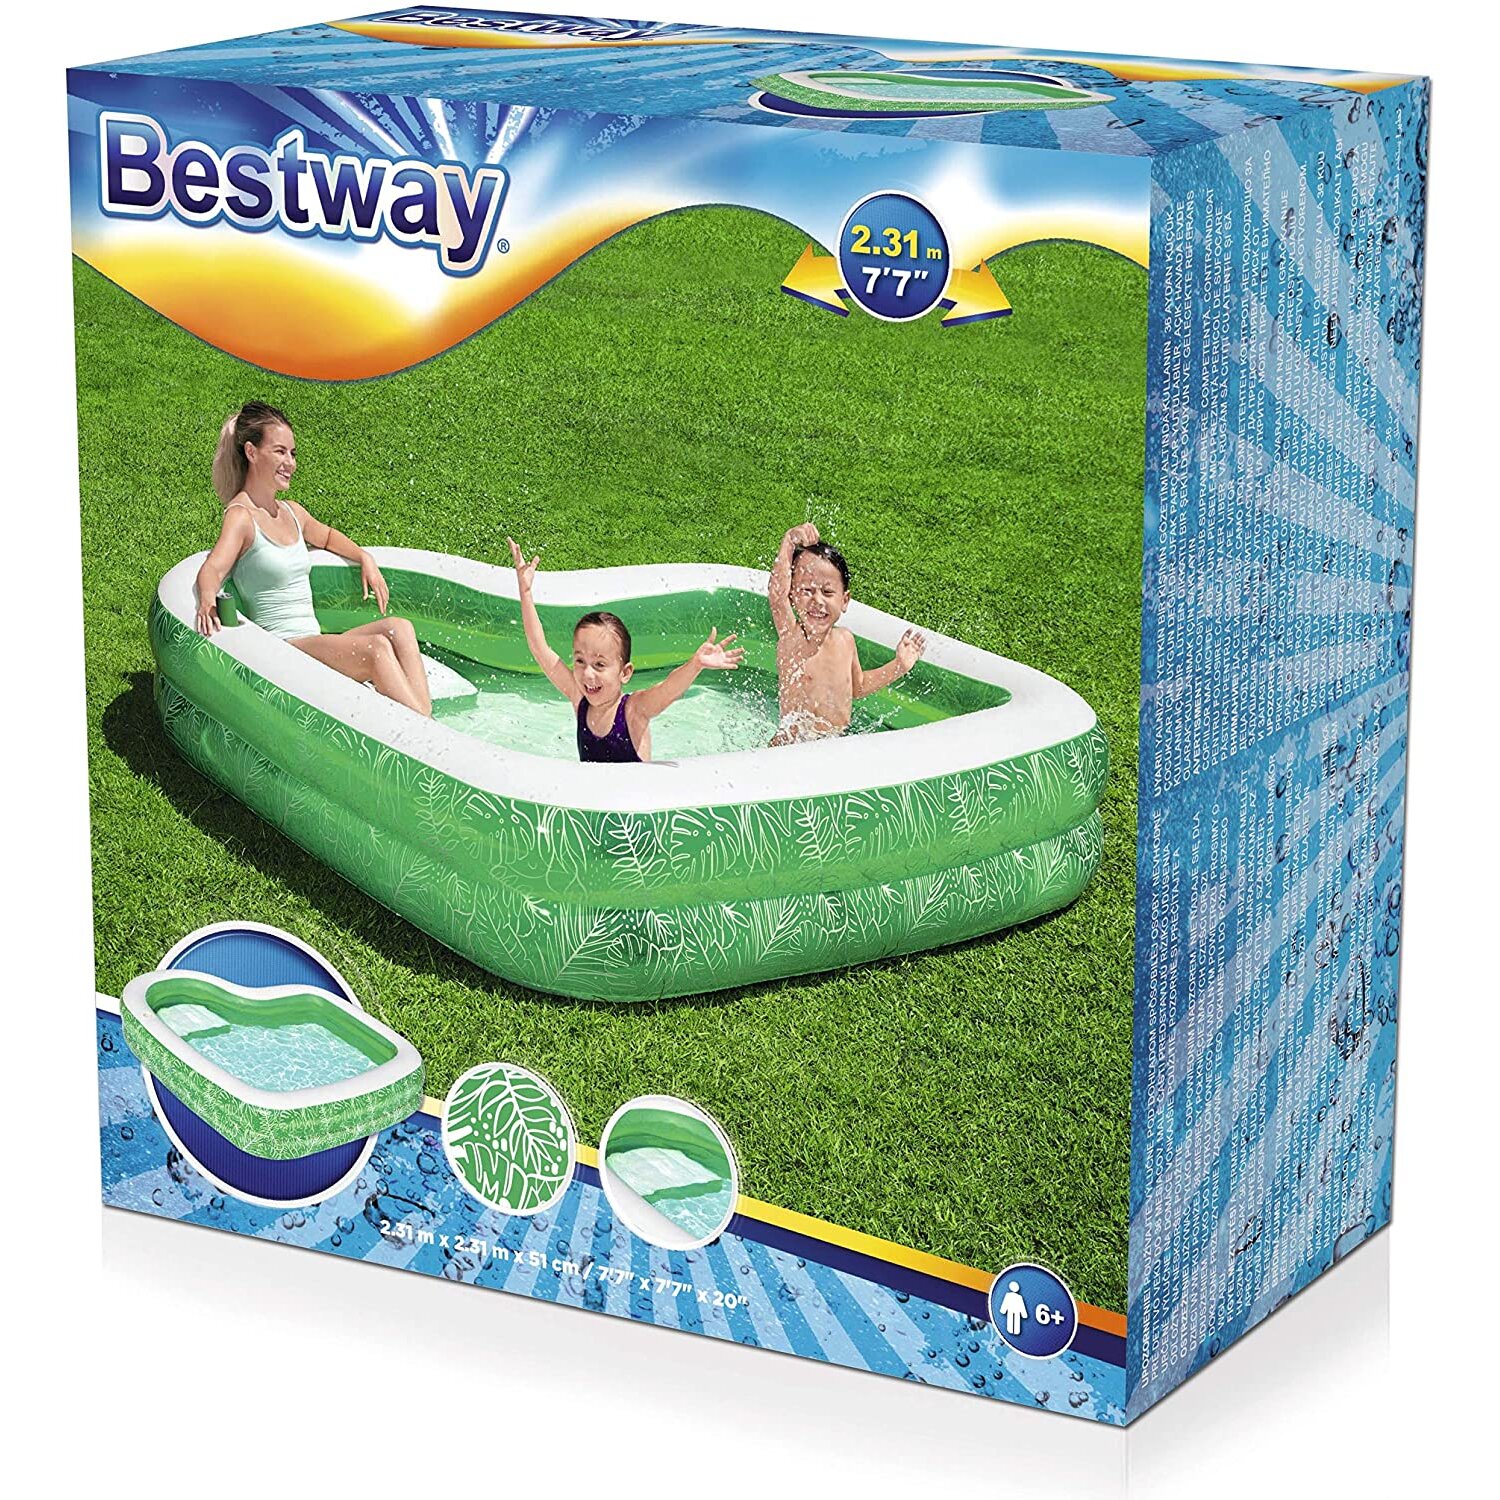 Bestway Tropical Paradise Fun Pool